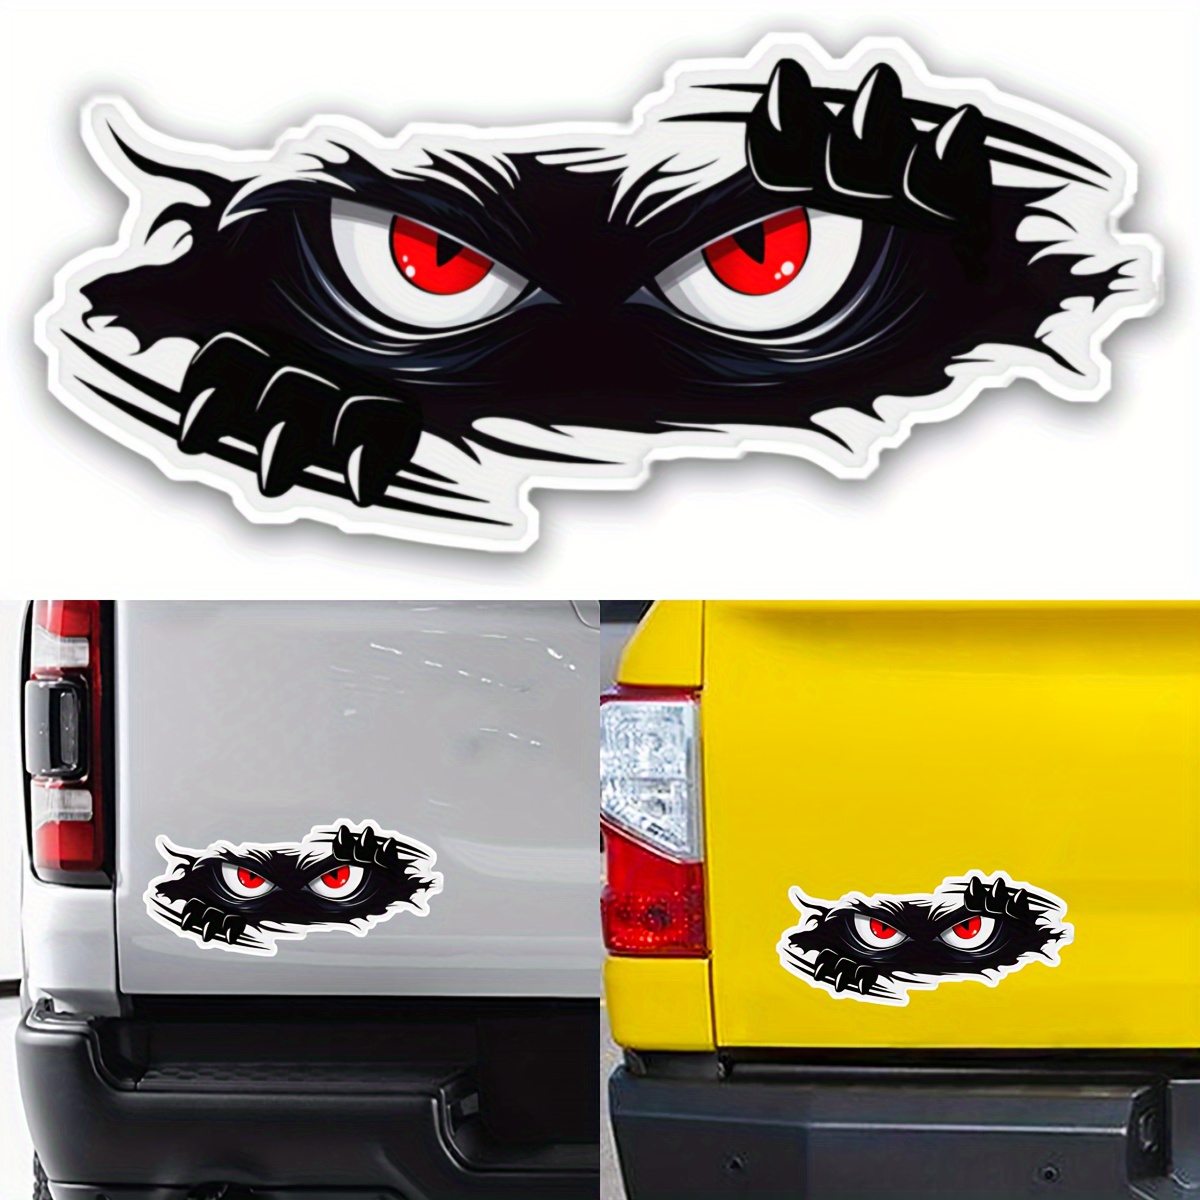 StickerTalk 4in x 2in Black Goofy Eyes Funny Sticker Vinyl Sticker Cup Vehicle Decal